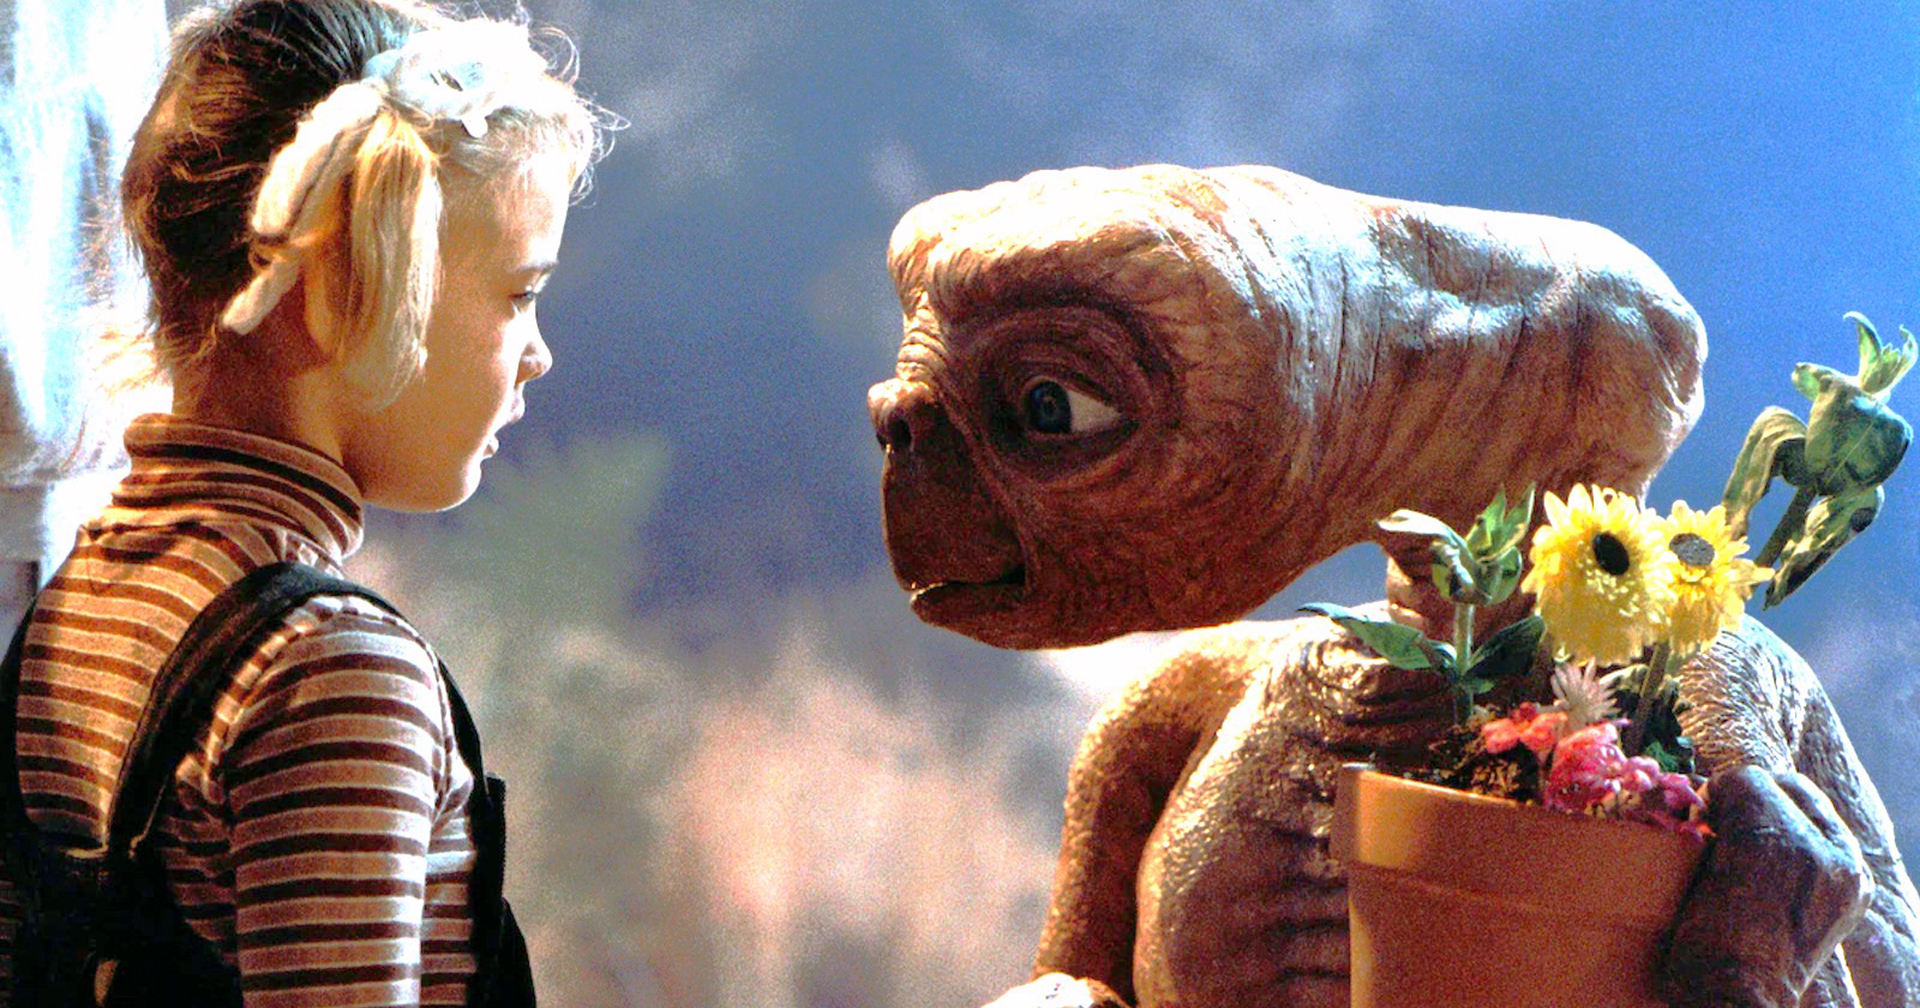 หุ่นแอนิเมทรอนิกส์ E.T. ของจริงจากหนัง ถูกนำมาประมูลในราคา 3 ล้านเหรียญ